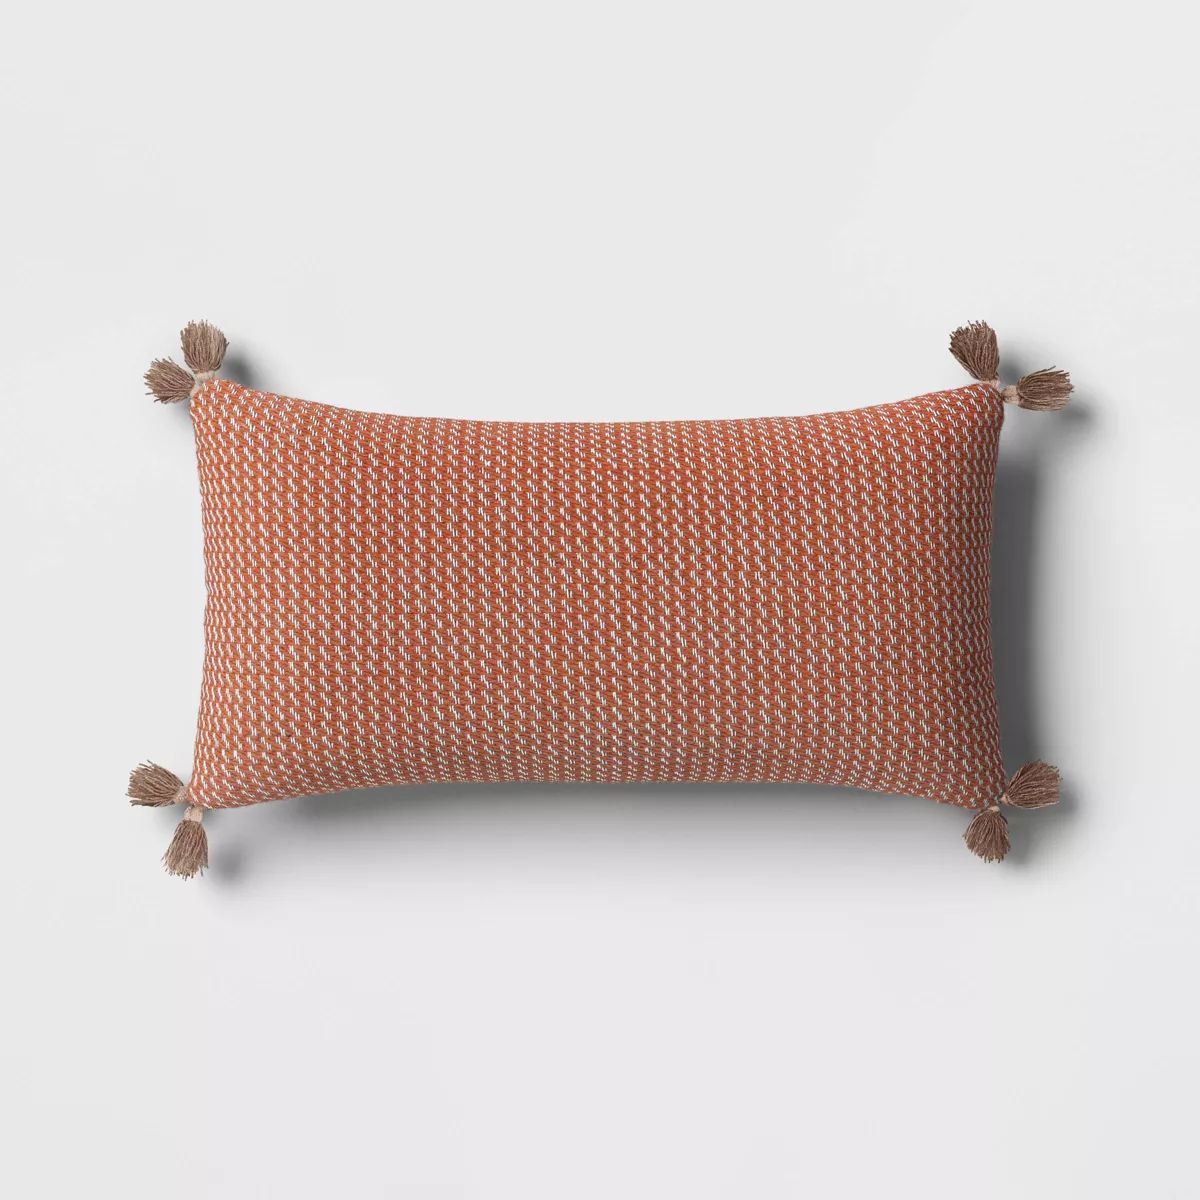 10"x20" Flecks Rectangular Outdoor Lumbar Pillow Rust - Threshold™ | Target